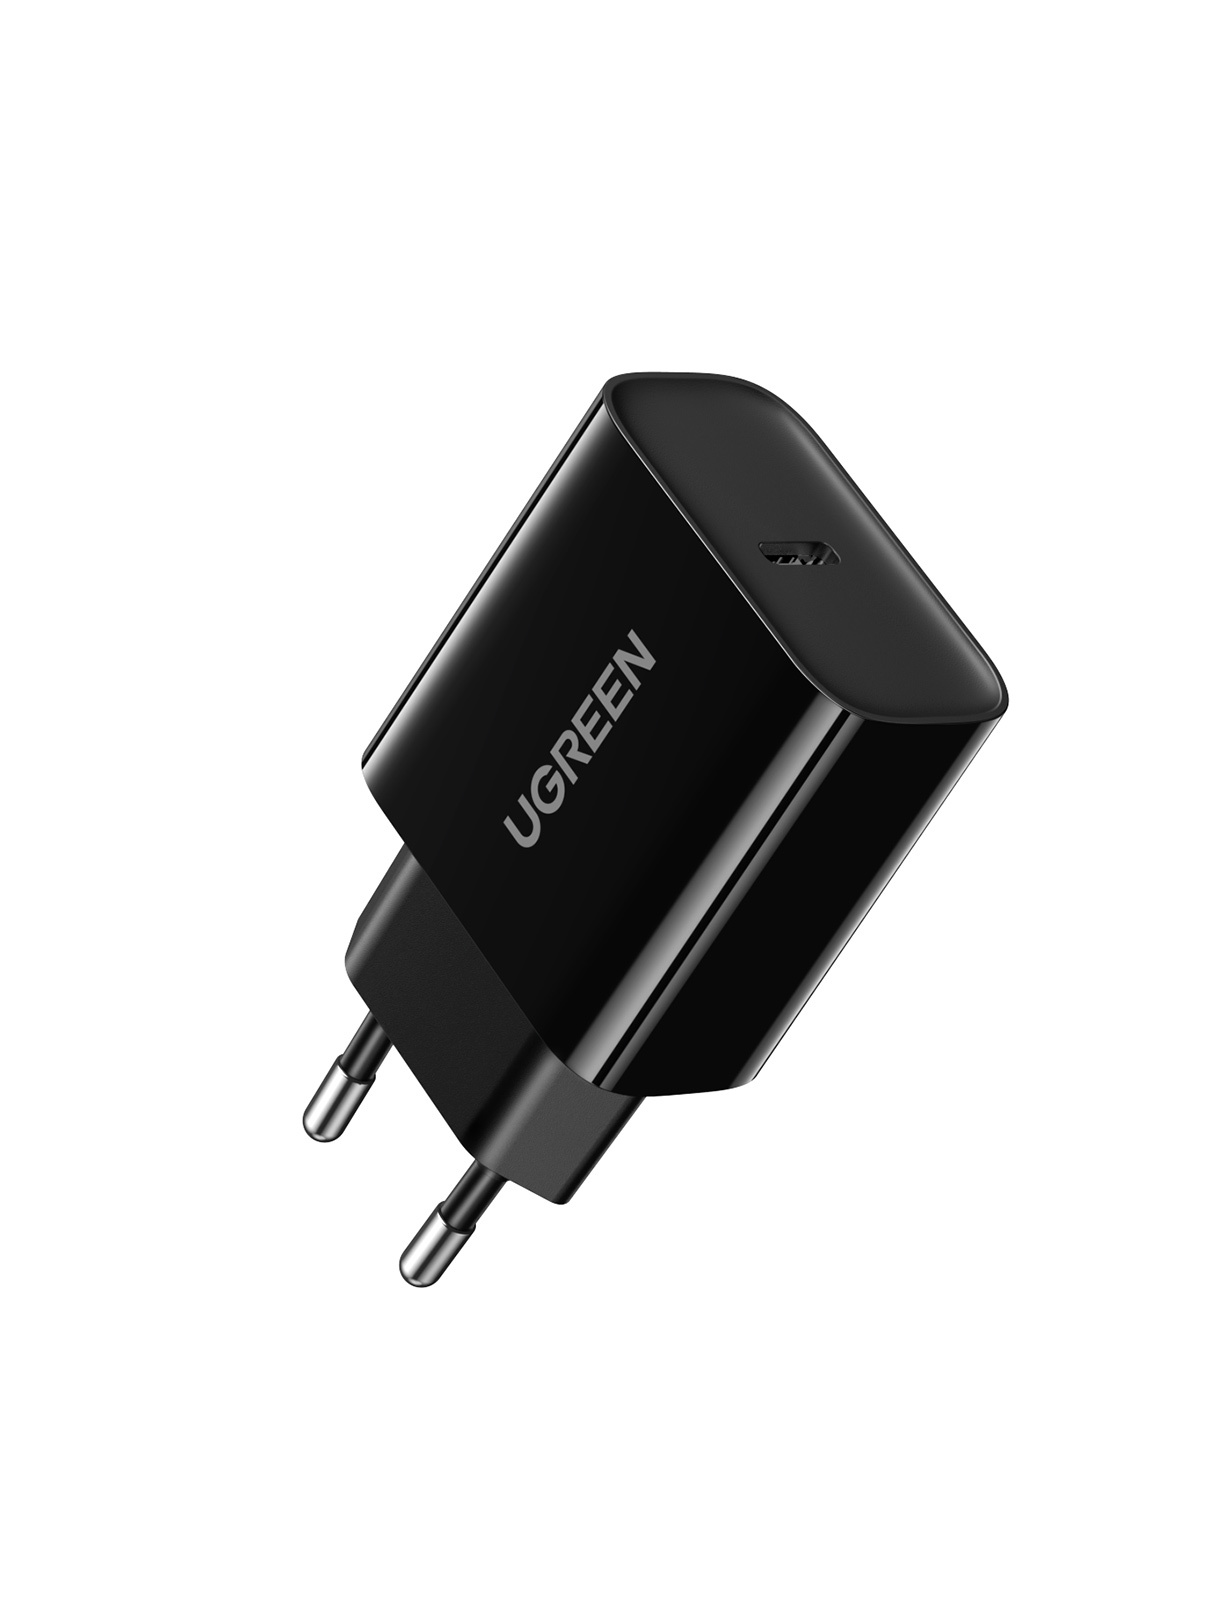 Сетевое зарядное устройство UGREEN CD137 USB-C PD 20Вт, цвет черный (10191) сетевое зарядное устройство ugreen ed011 50459 usb a wall charger 1 порт черный